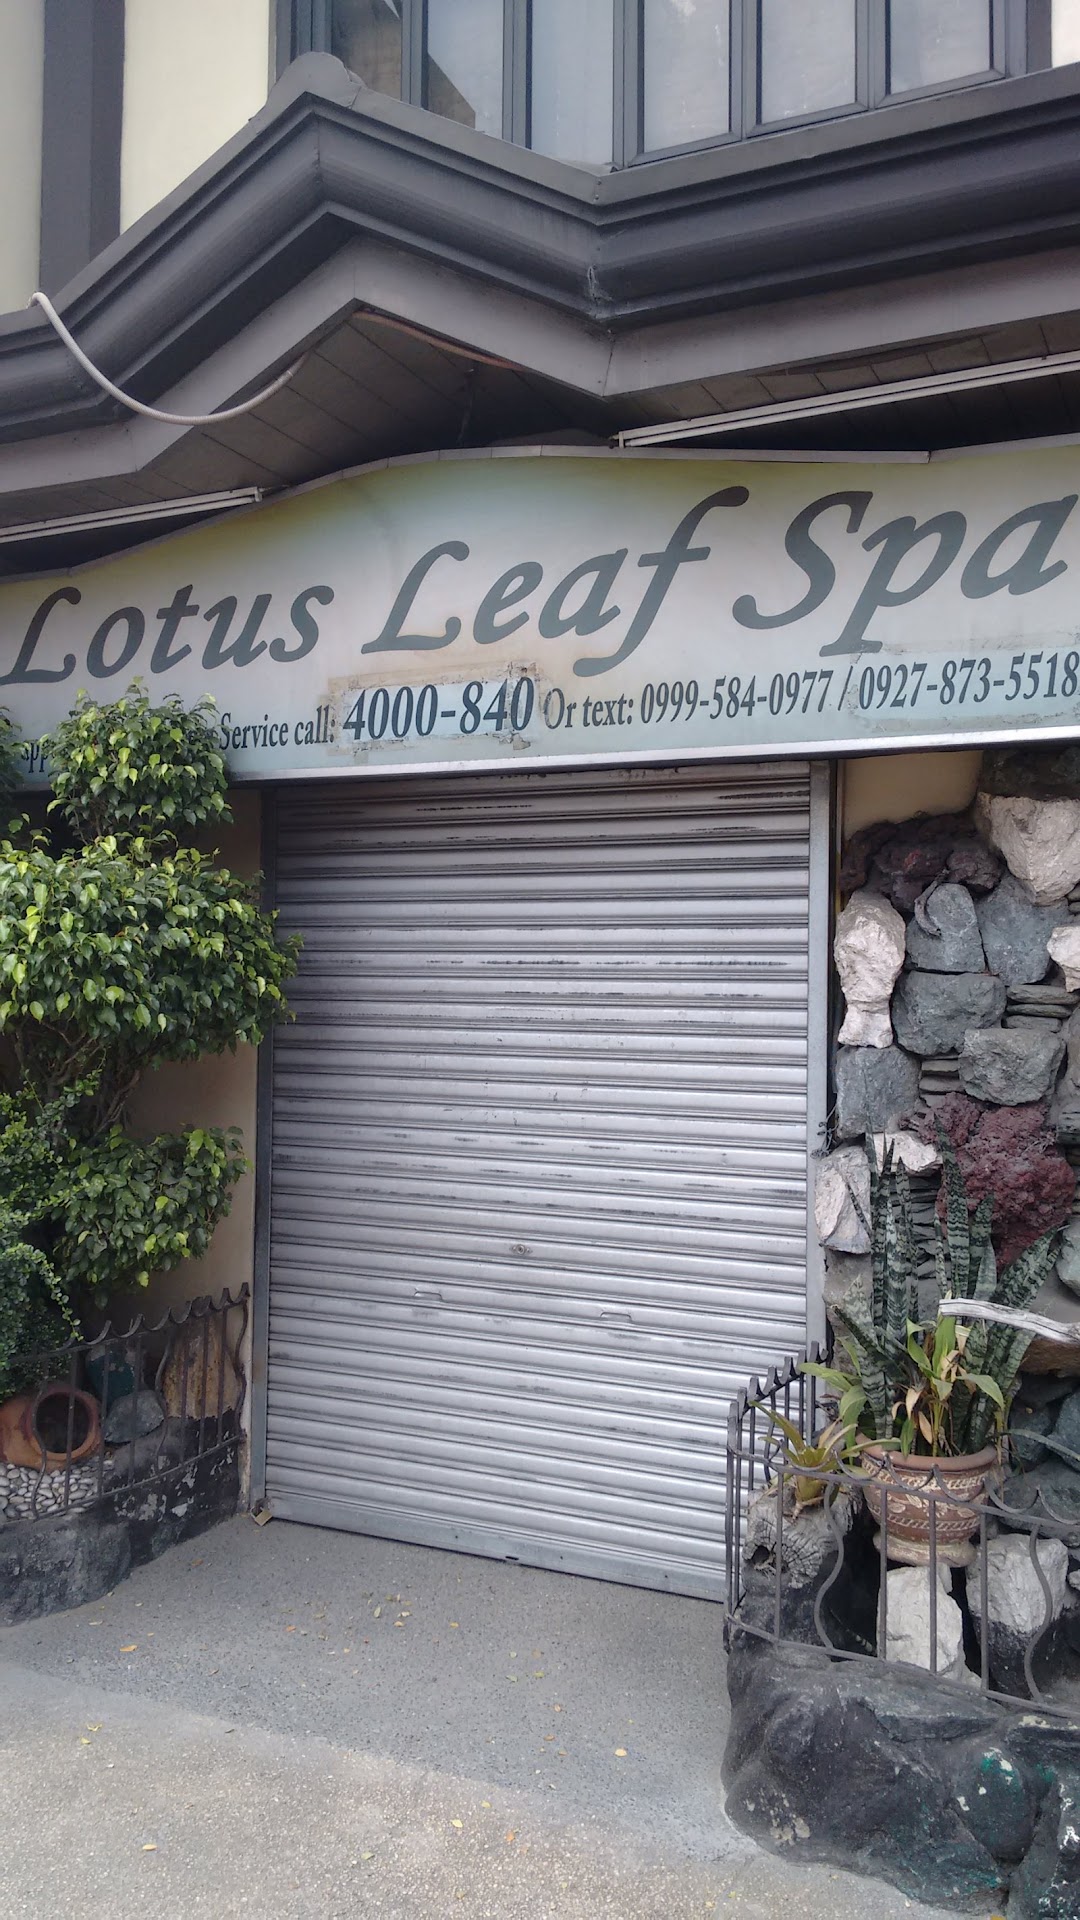 Lotus Leaf Spa